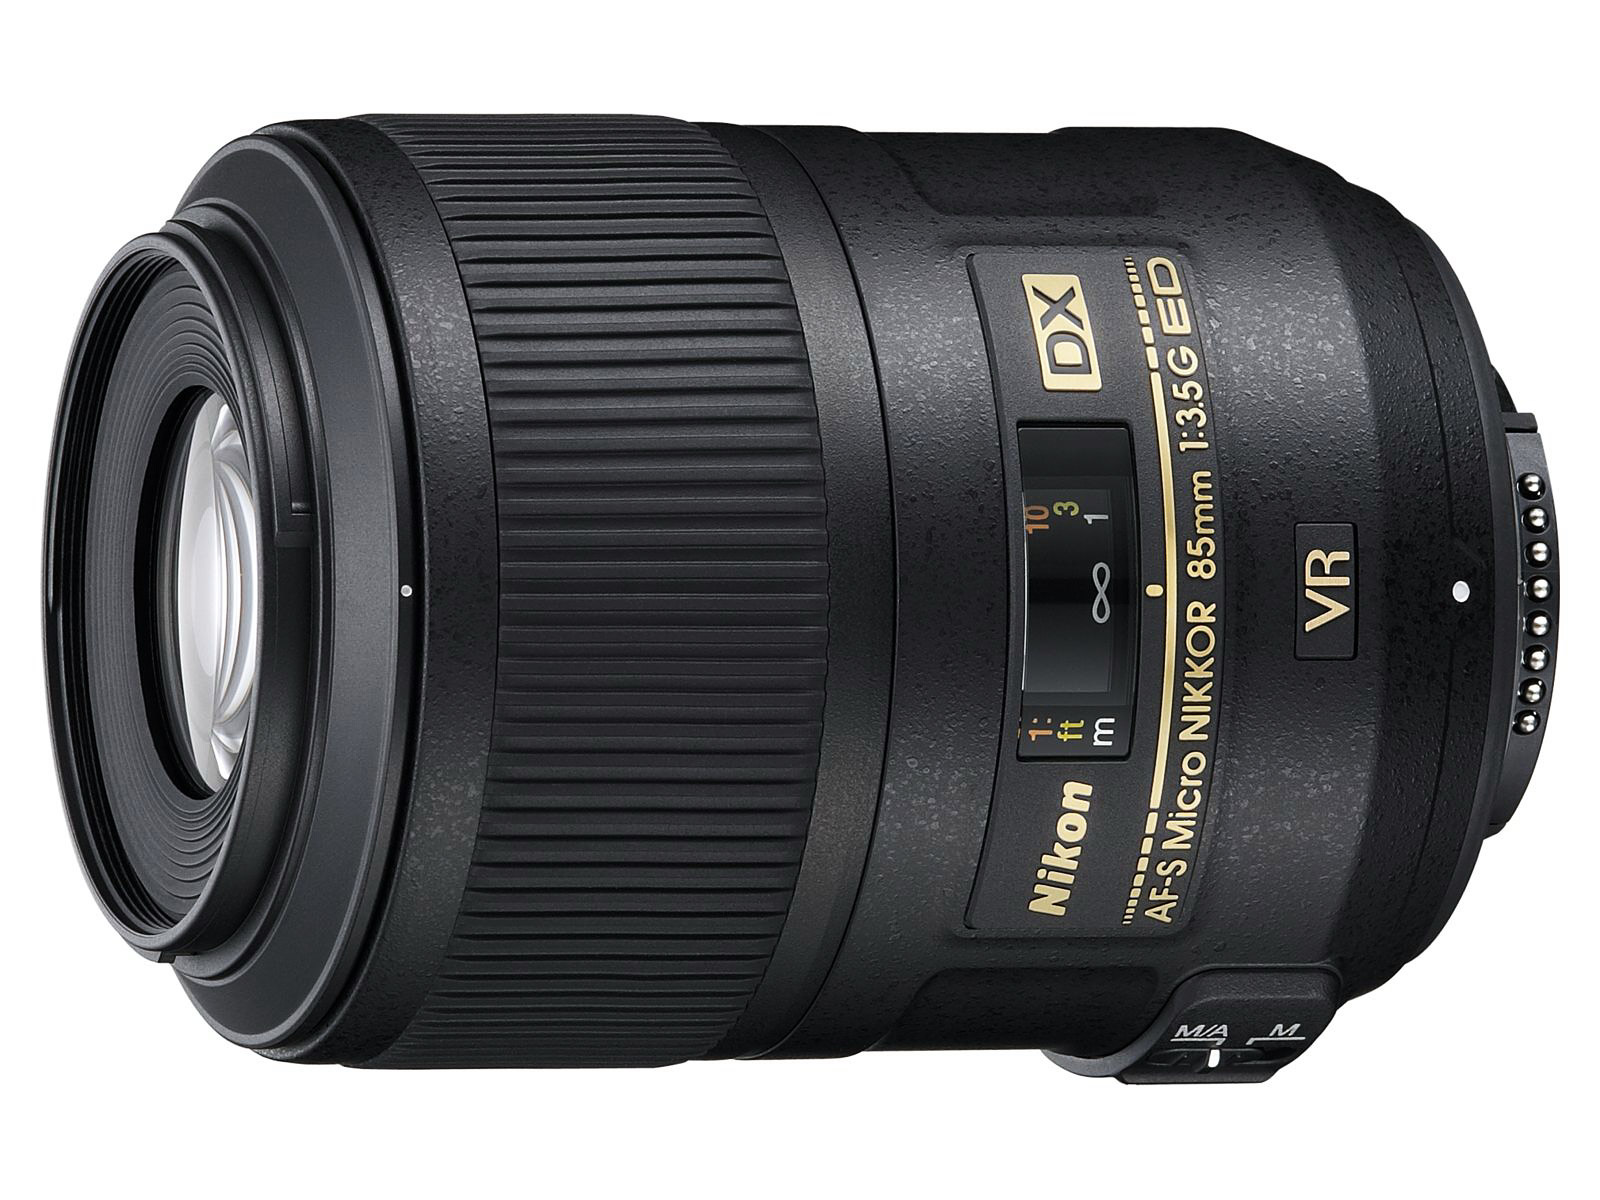 Nikon AF-S DX 85mm f/3.5 G ED VR Micro